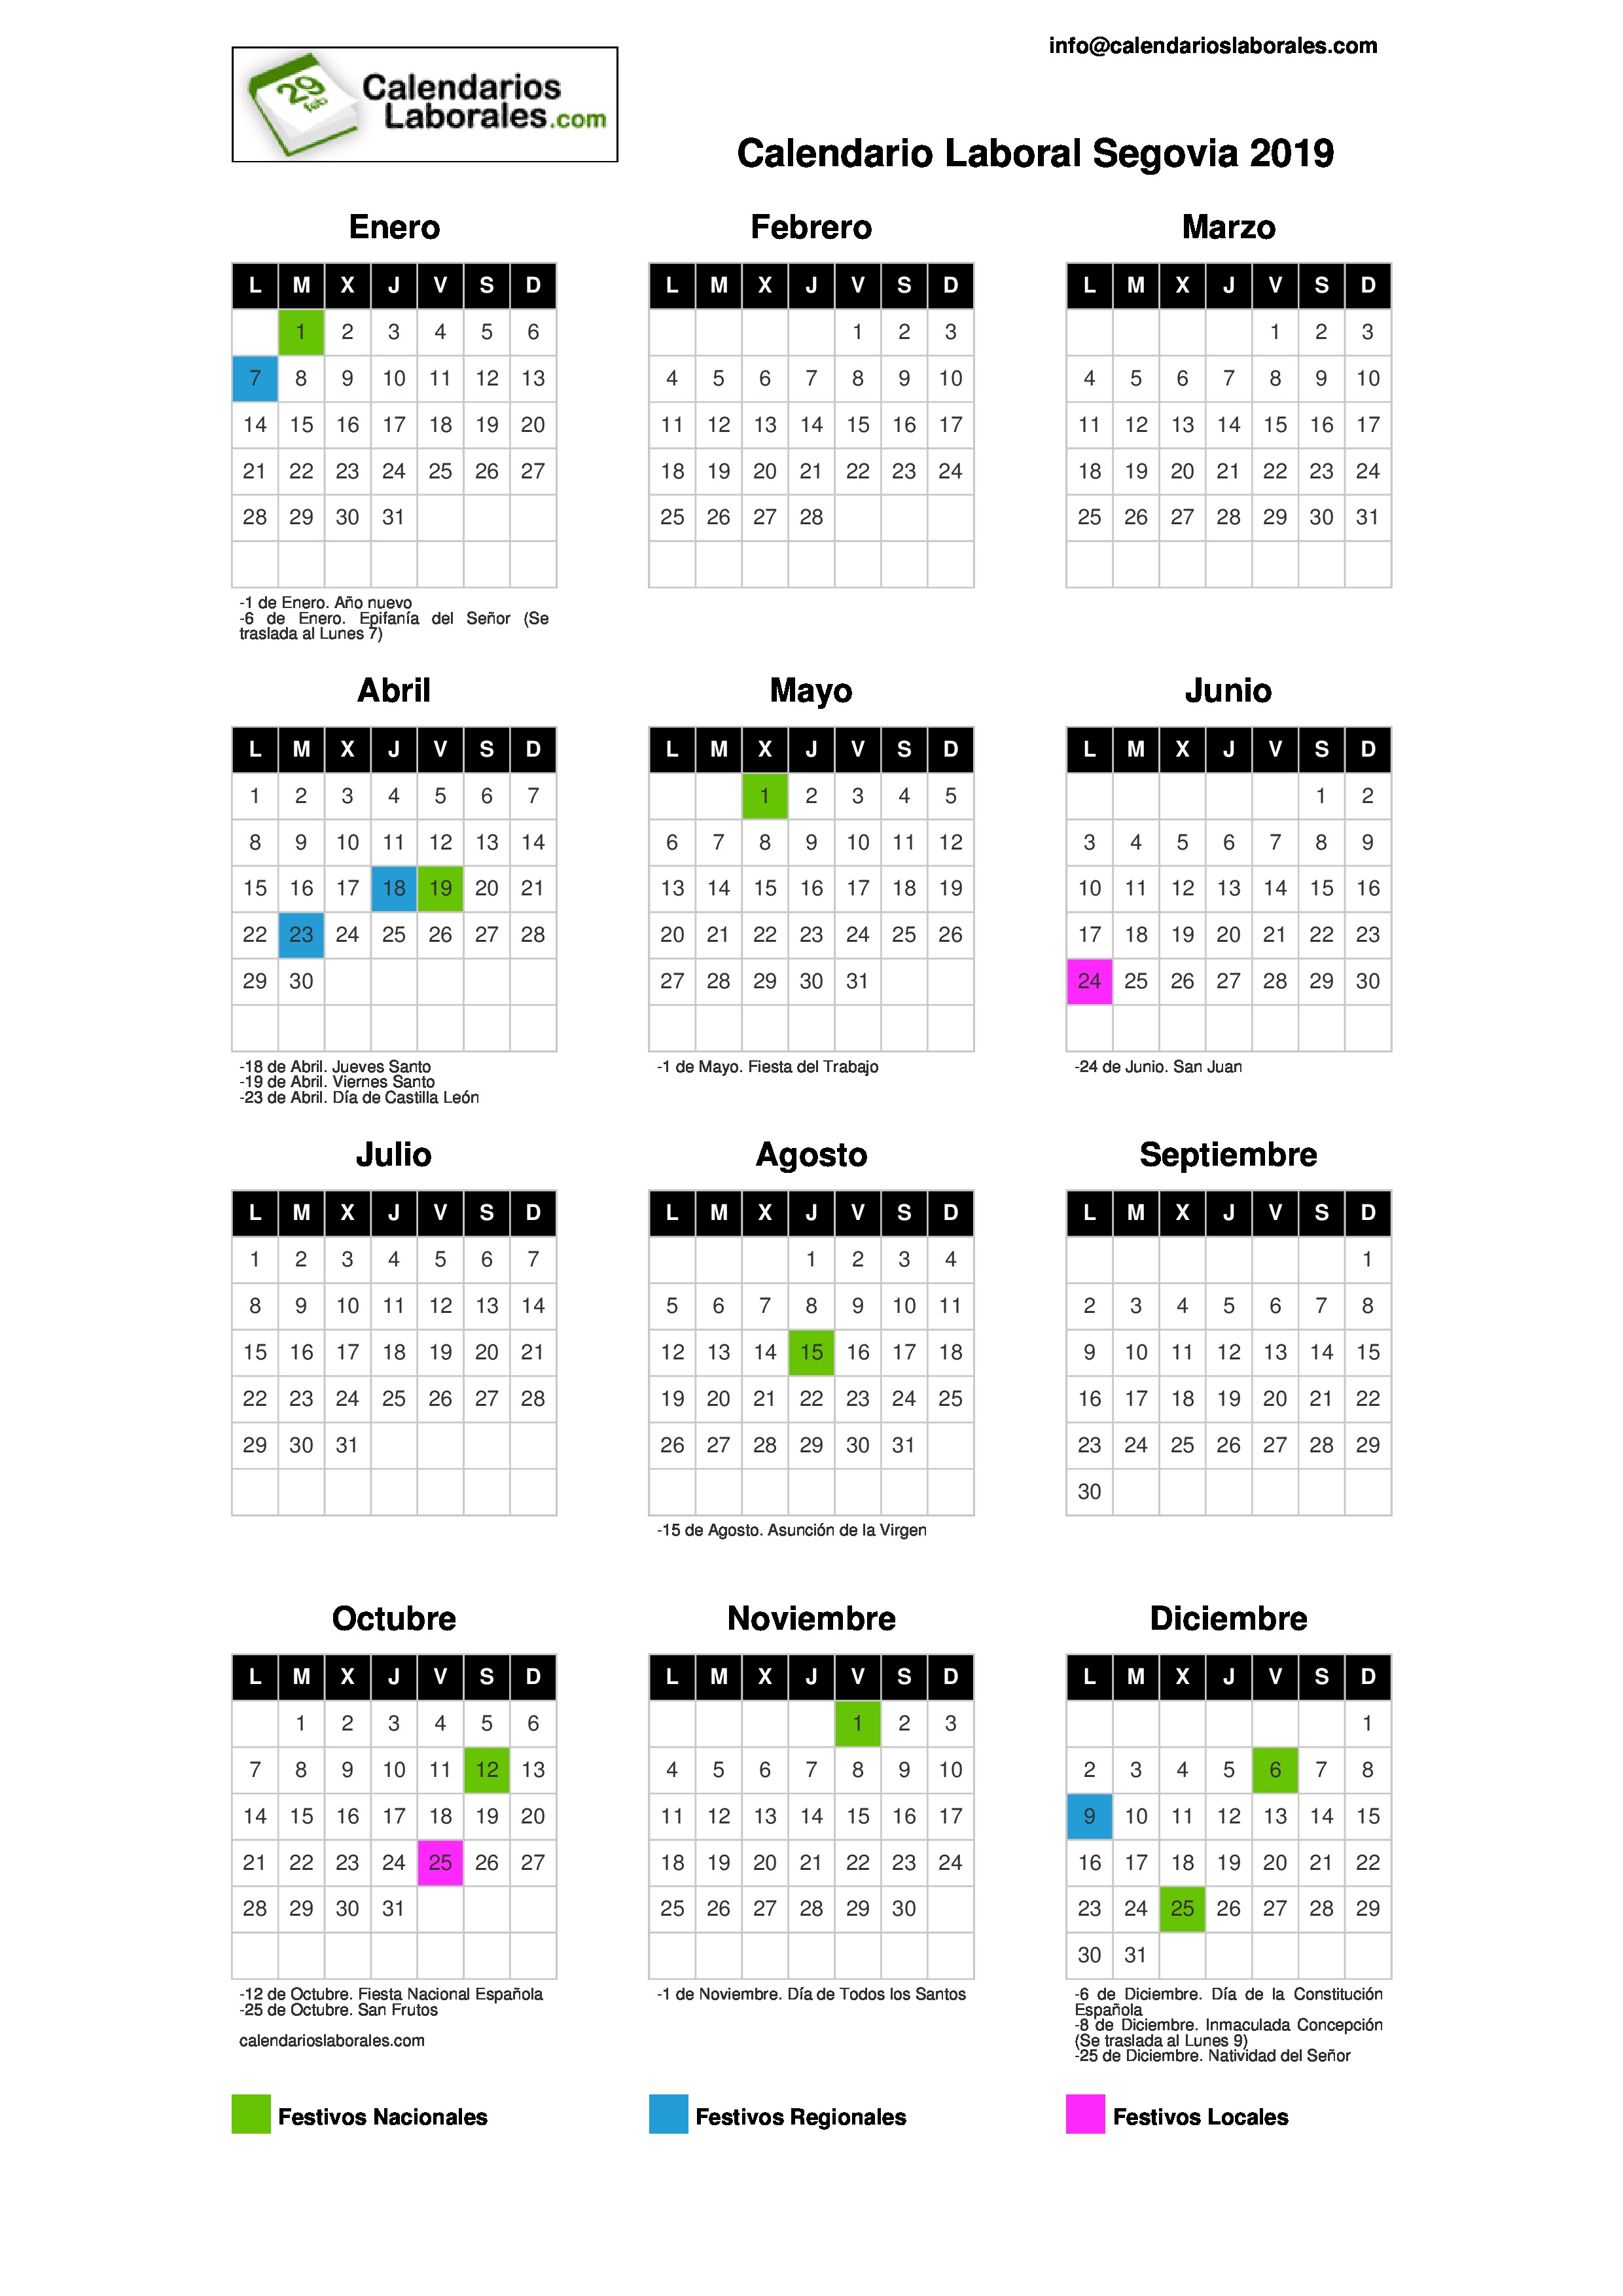 Calendario Laboral Segovia 20192480 x 3508